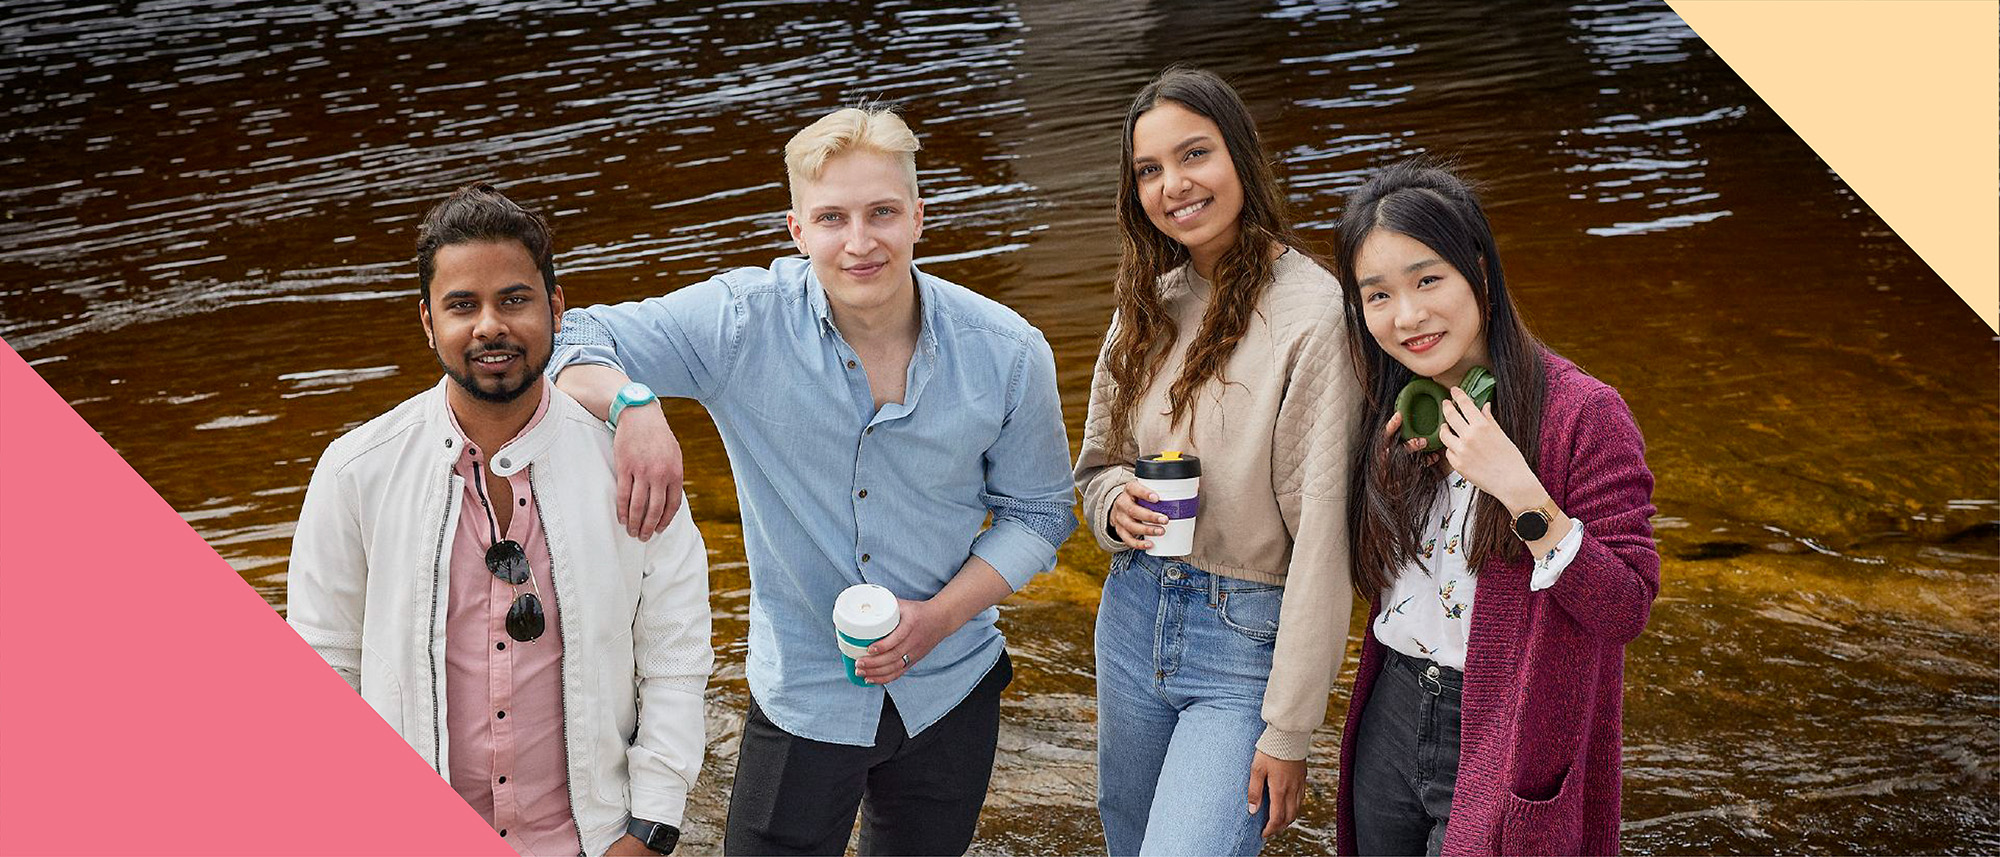 Neljä hymyilevää opiskelijaa seisoo vierekkäin järven rannalla.